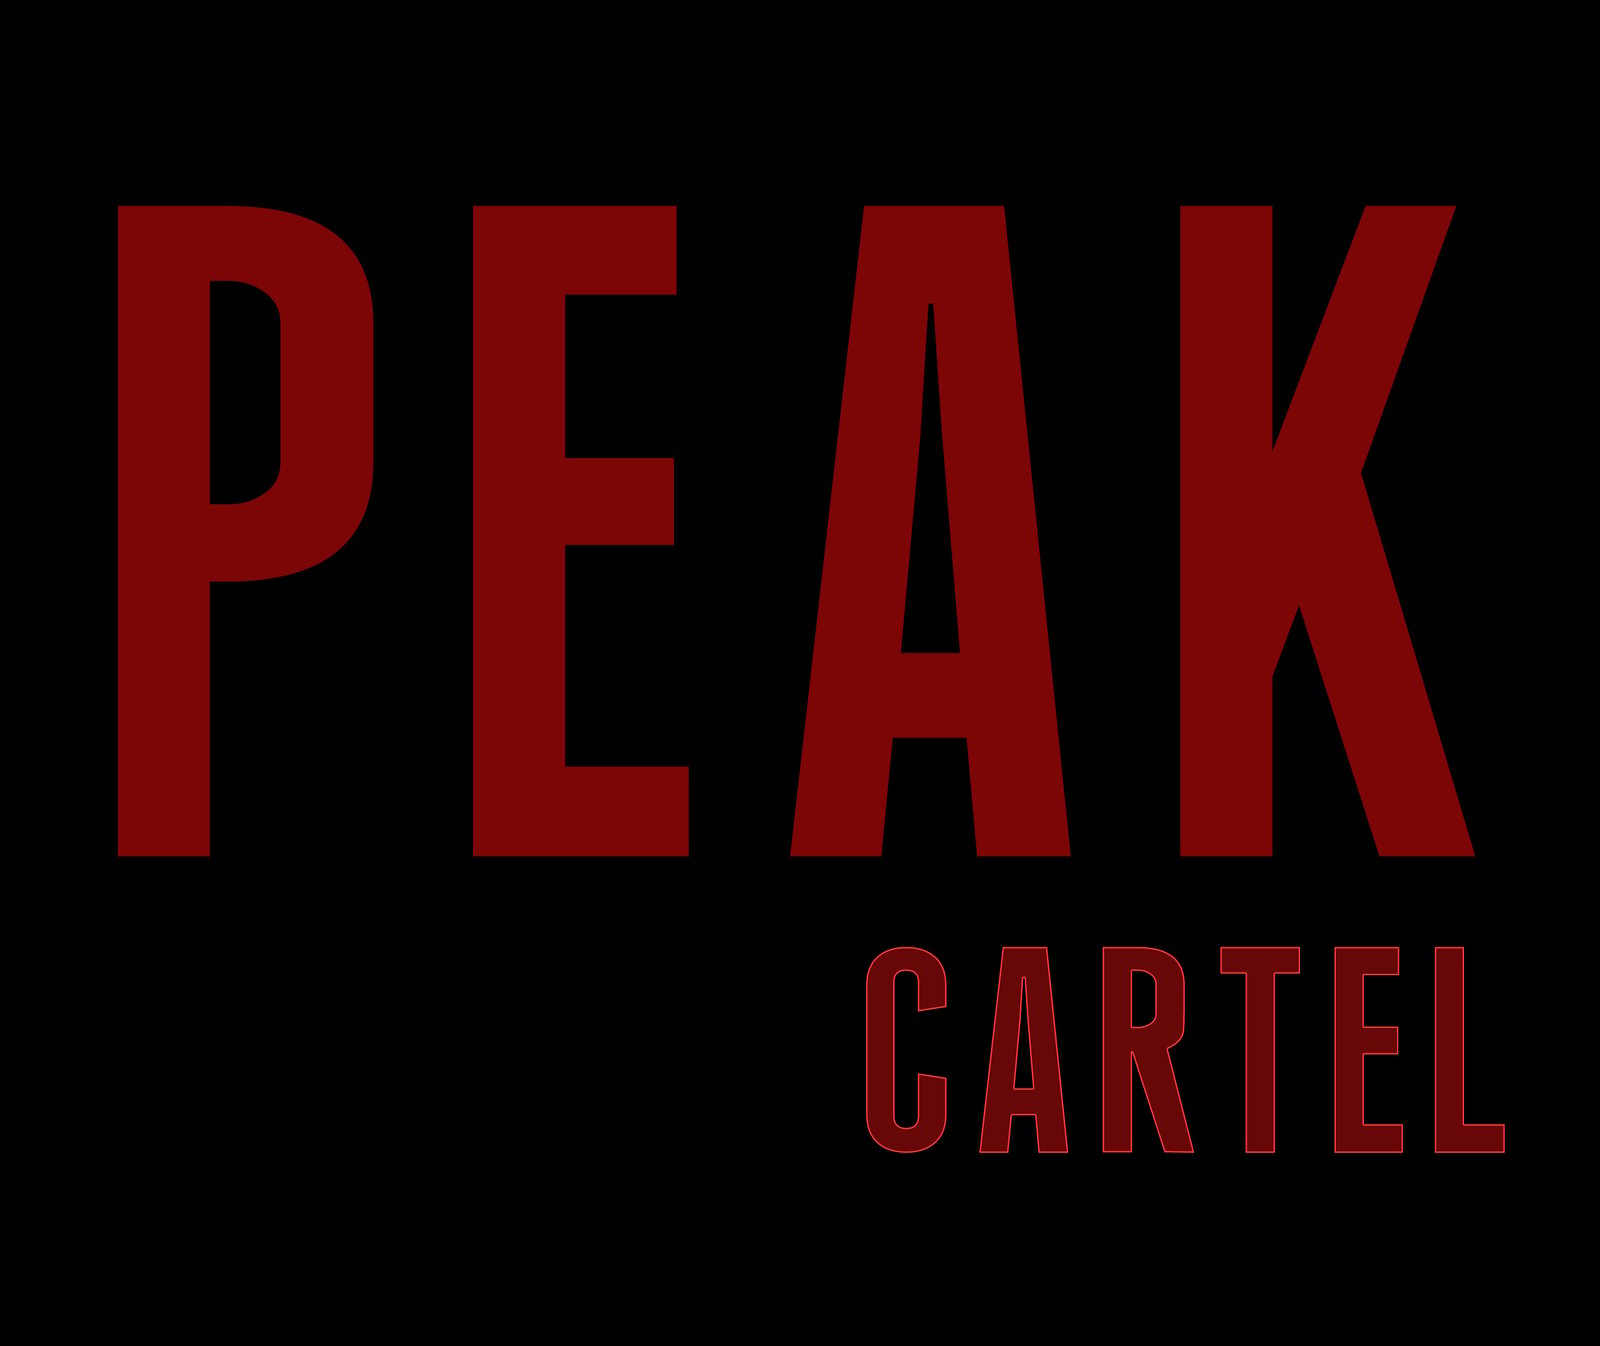 Peak Cartel